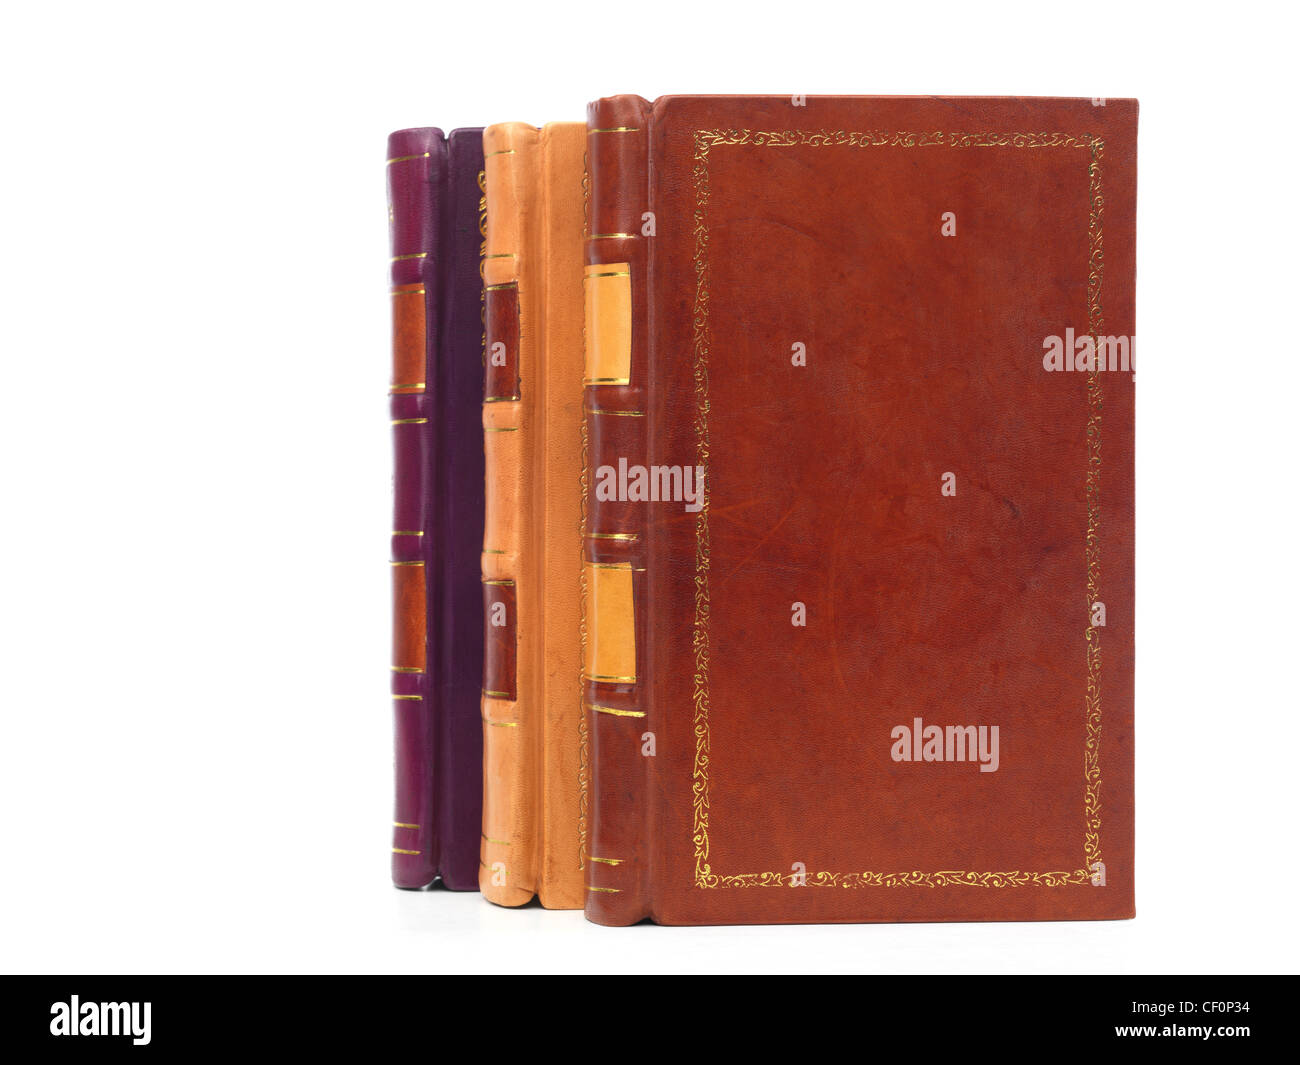 Tre volumi di pelle con copertina rigida libro rilegato isolati su sfondo bianco Foto Stock